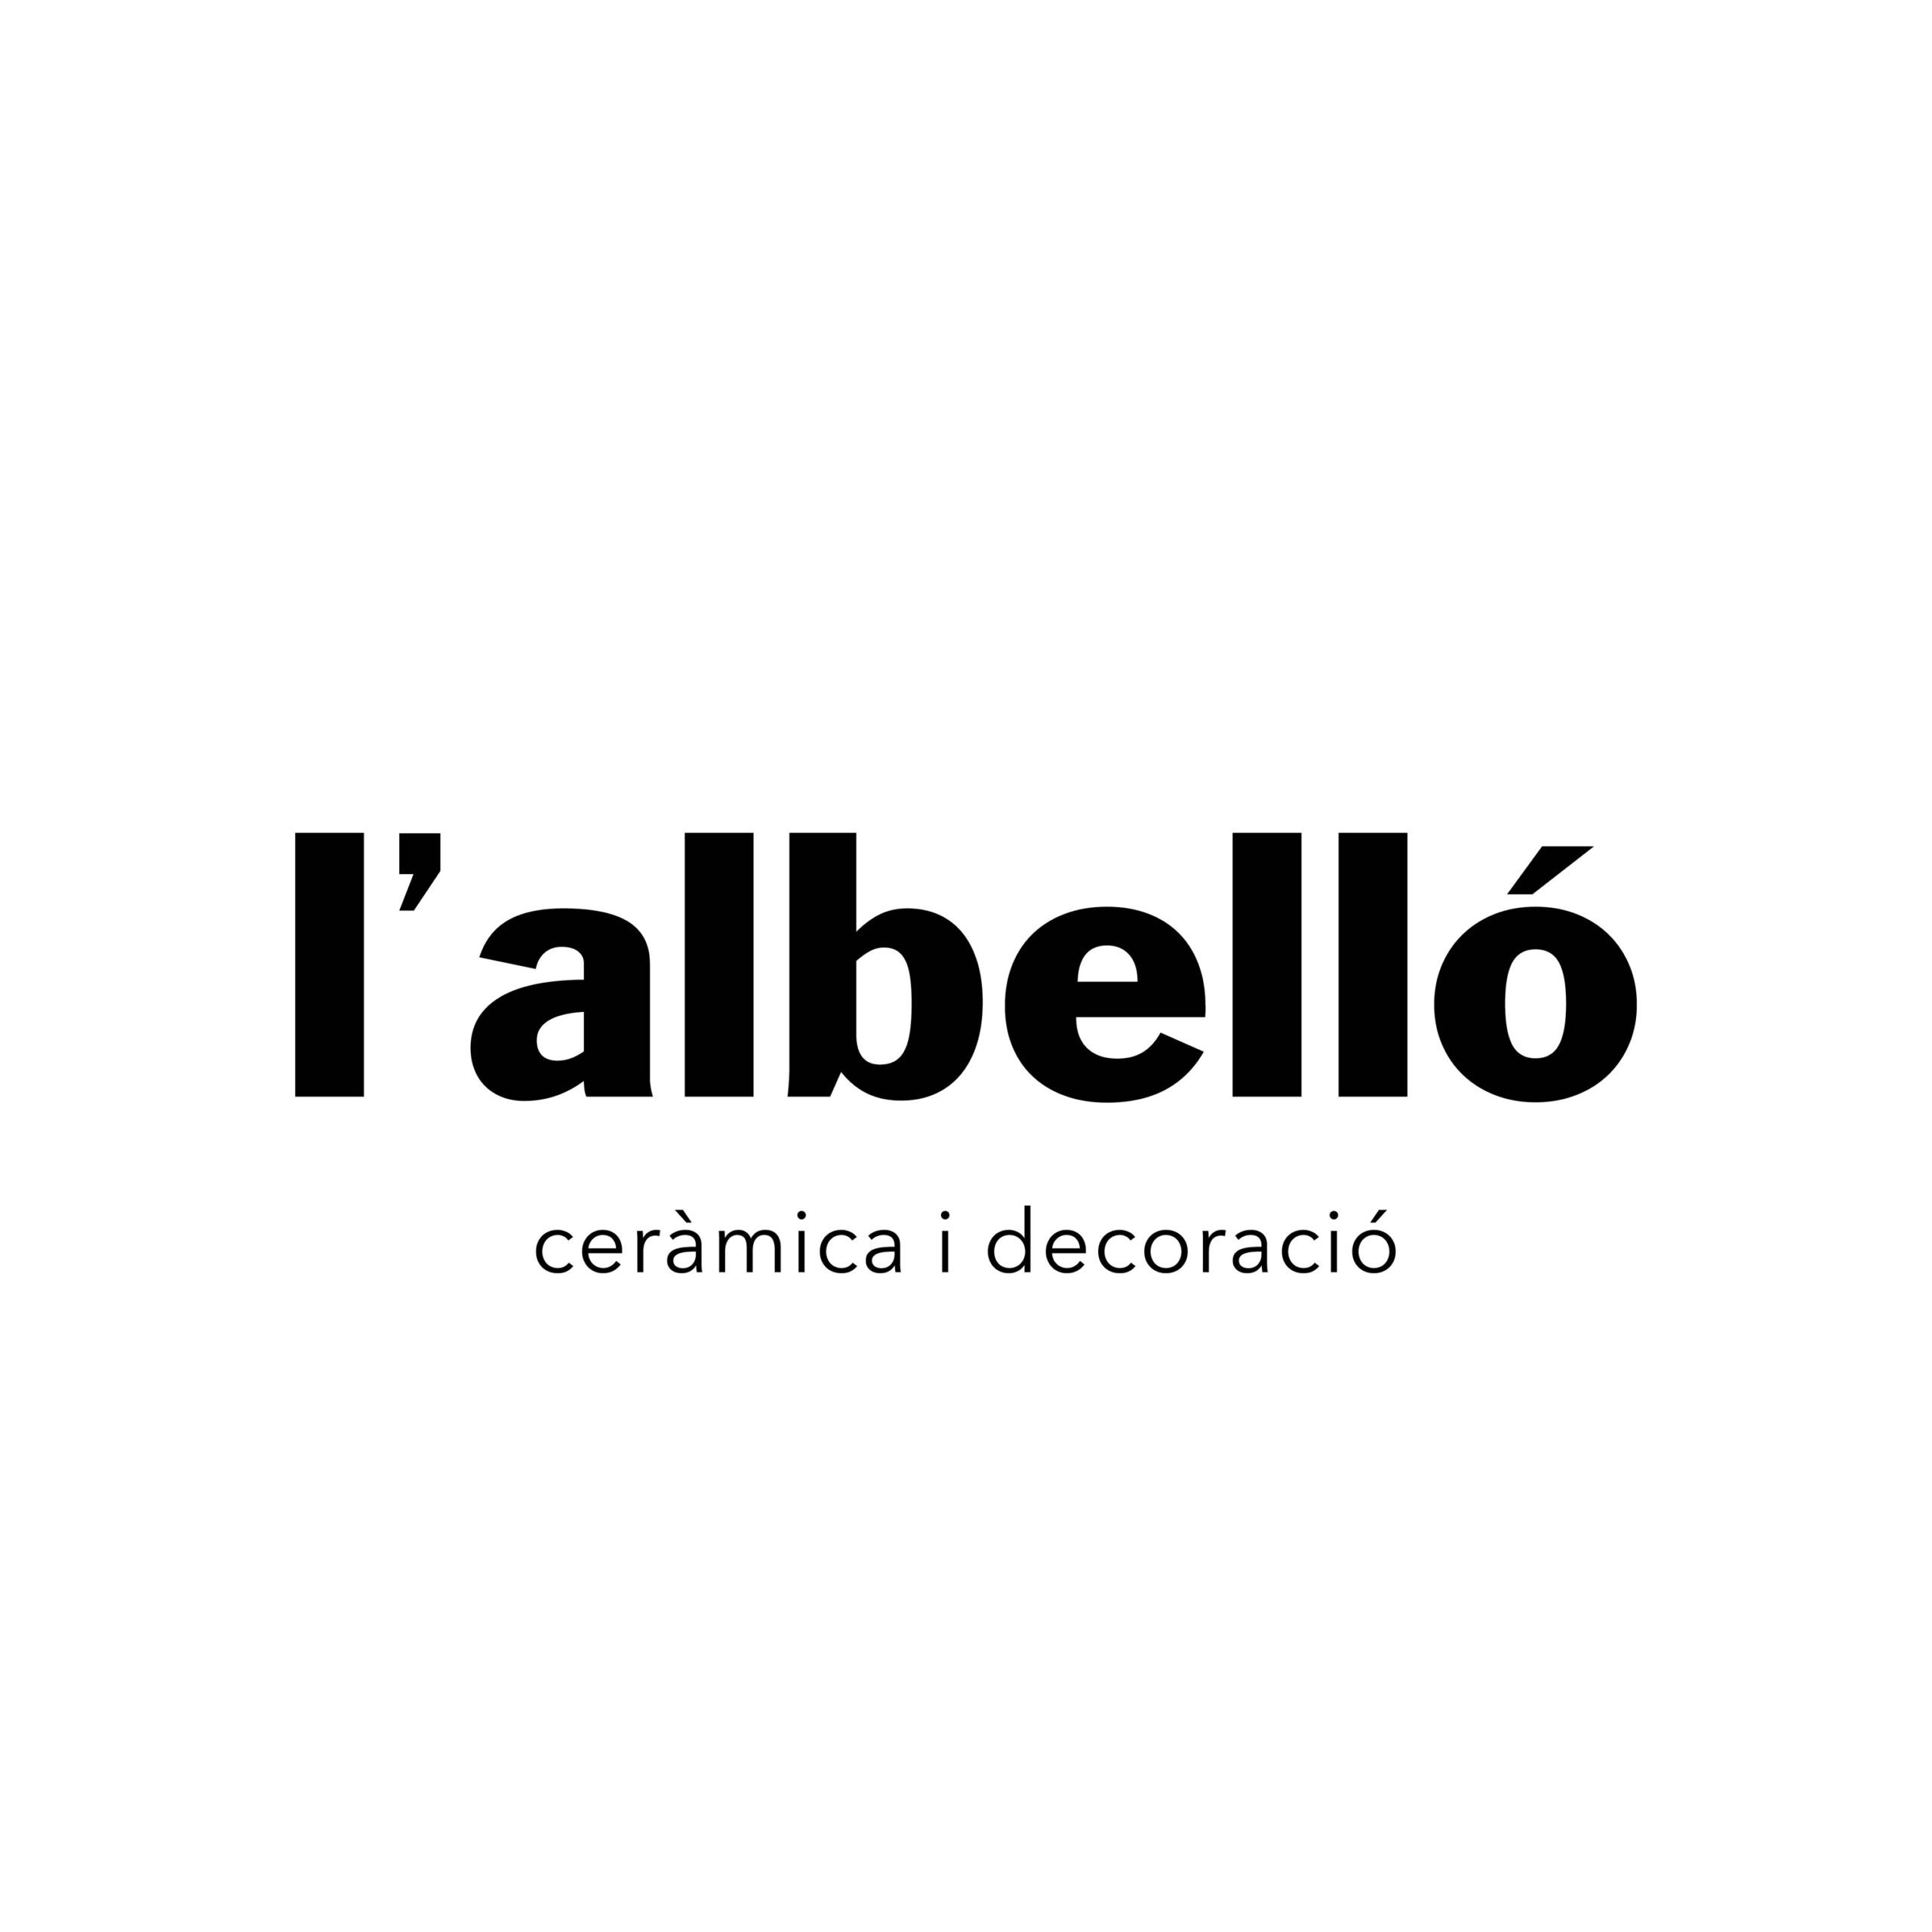 lalbello logo 2021 2 scaled